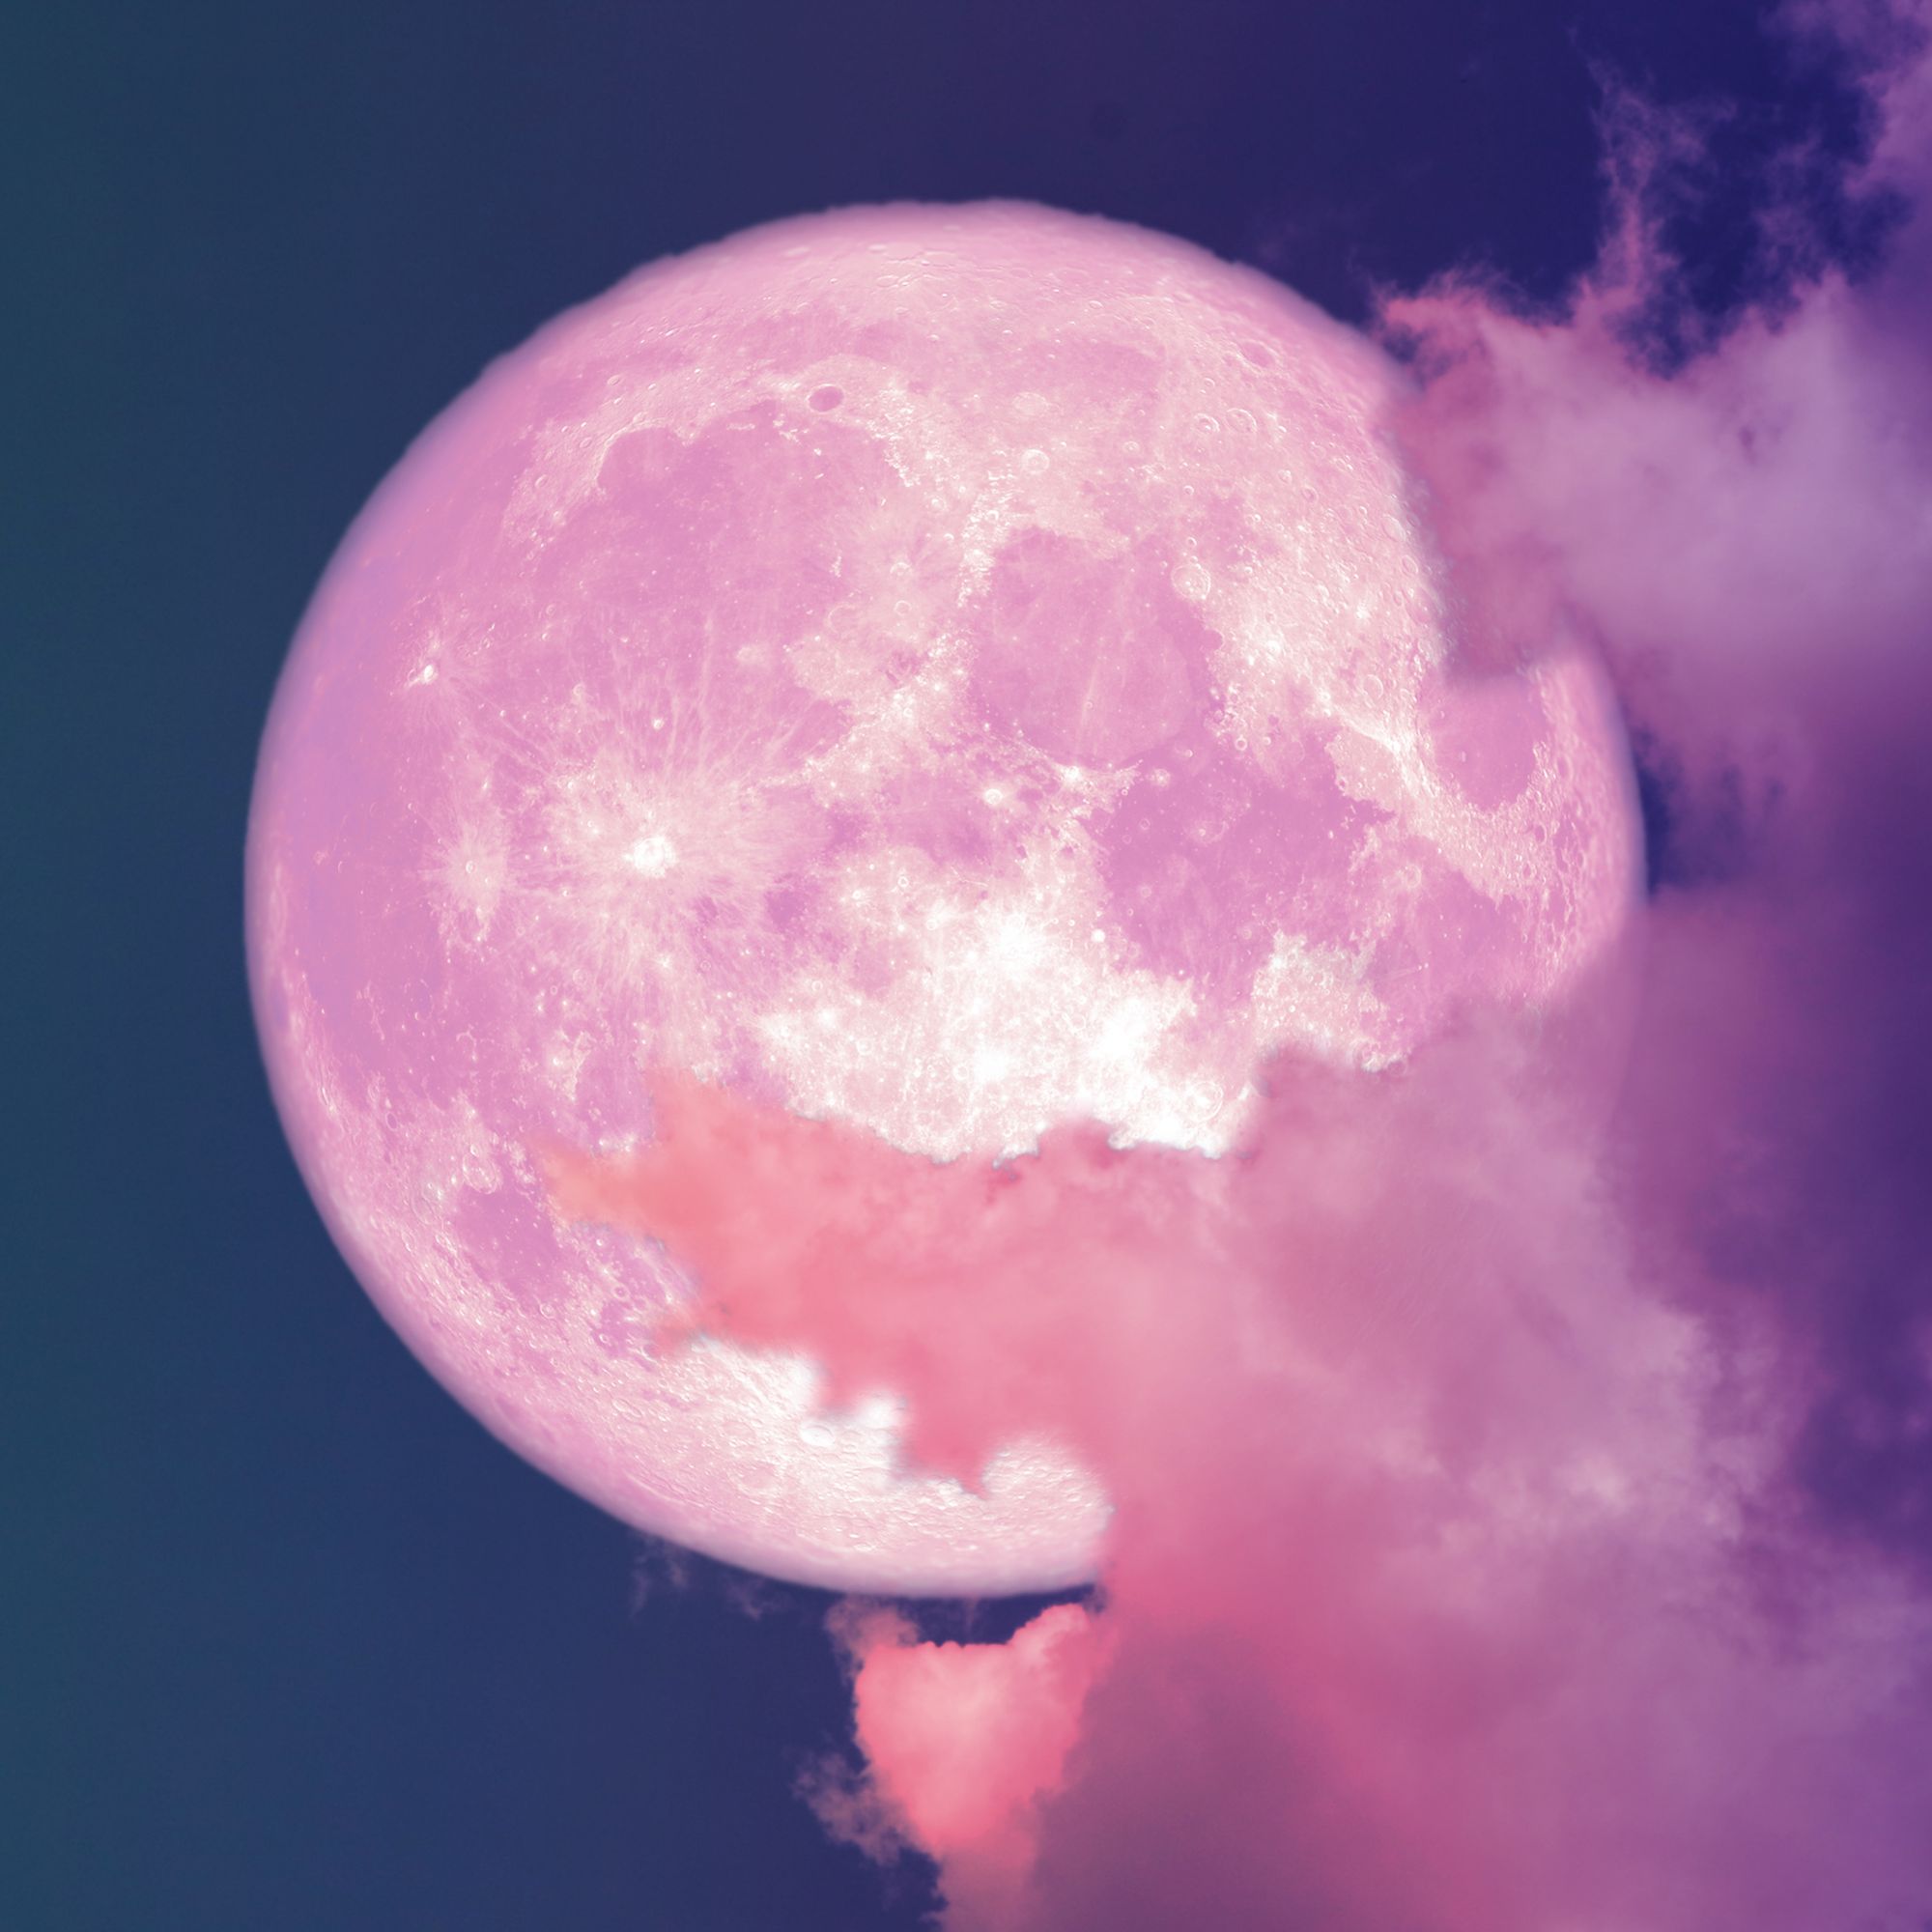 صورة قمر وردي بين سحاب وردي في السماء